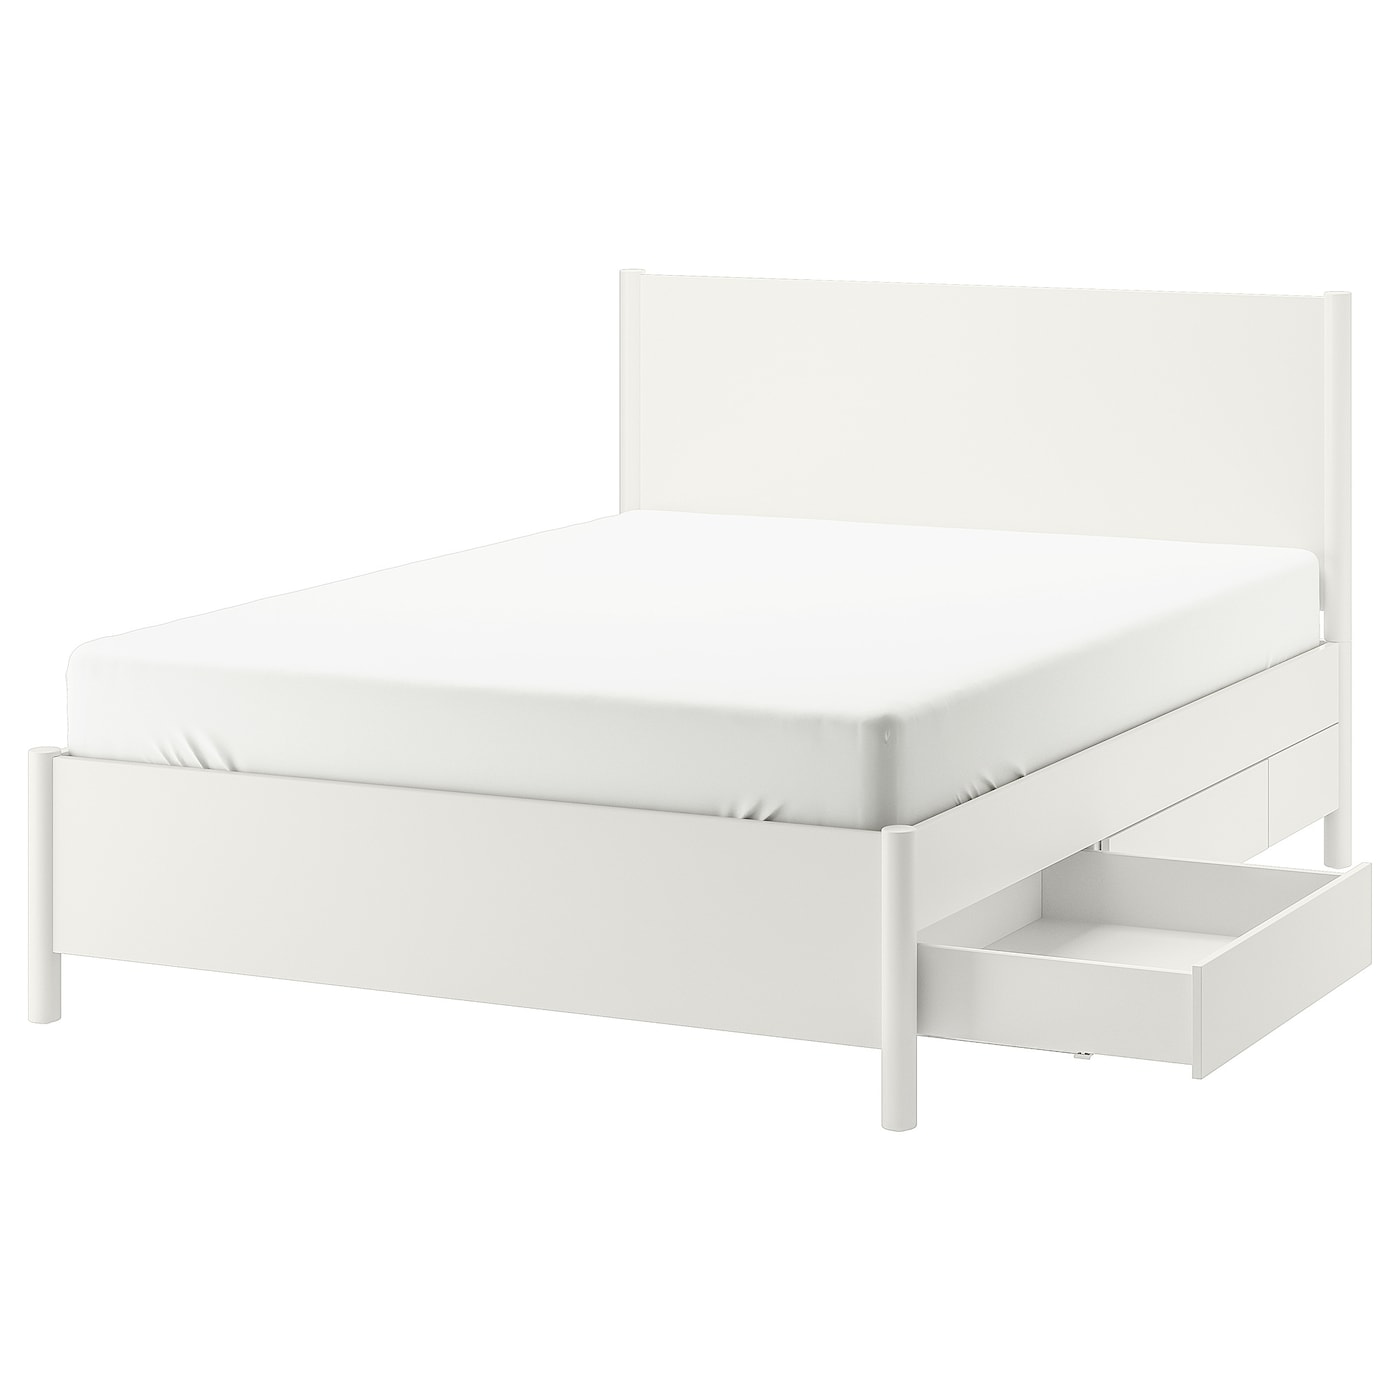 Каркас кровати - TONSTAD IKEA/ ТОНСТАД ИКЕА,  211х174 см, белый